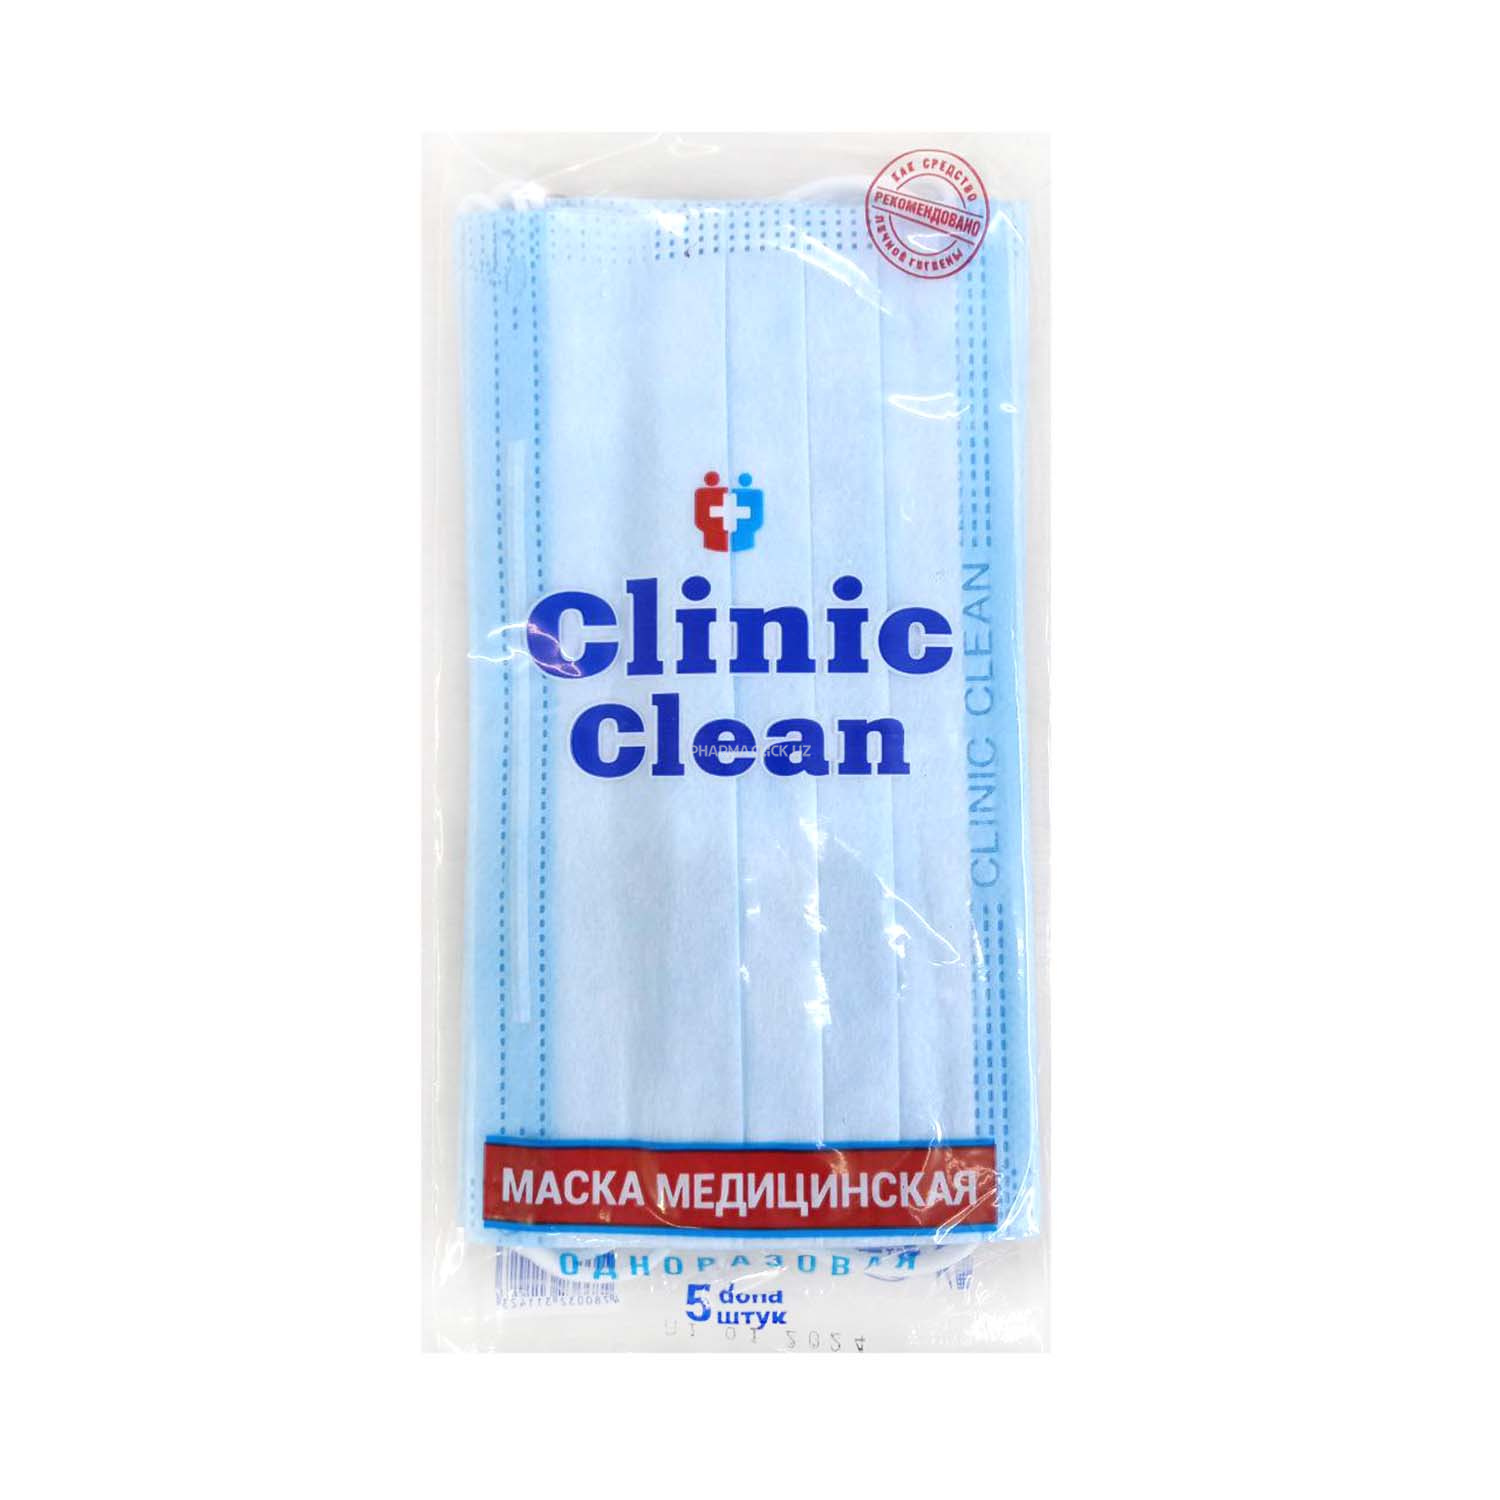 Маска лицевая гигиеническая из нетканного полотна"Clininc clean"№5 Синие